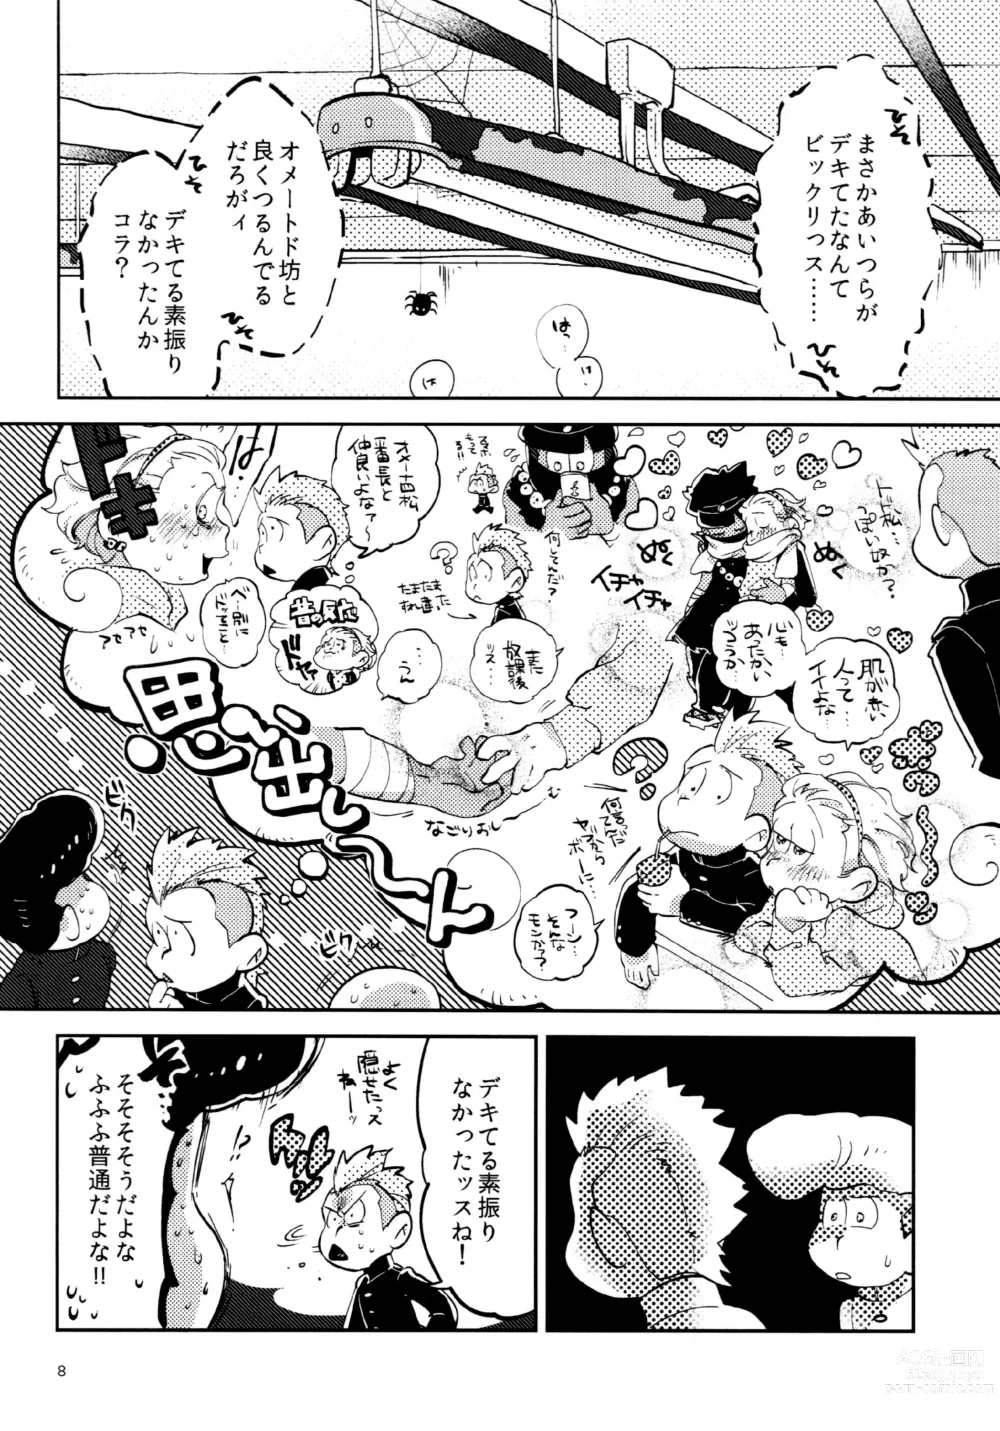 Page 8 of doujinshi Gaman Joutou I Love You